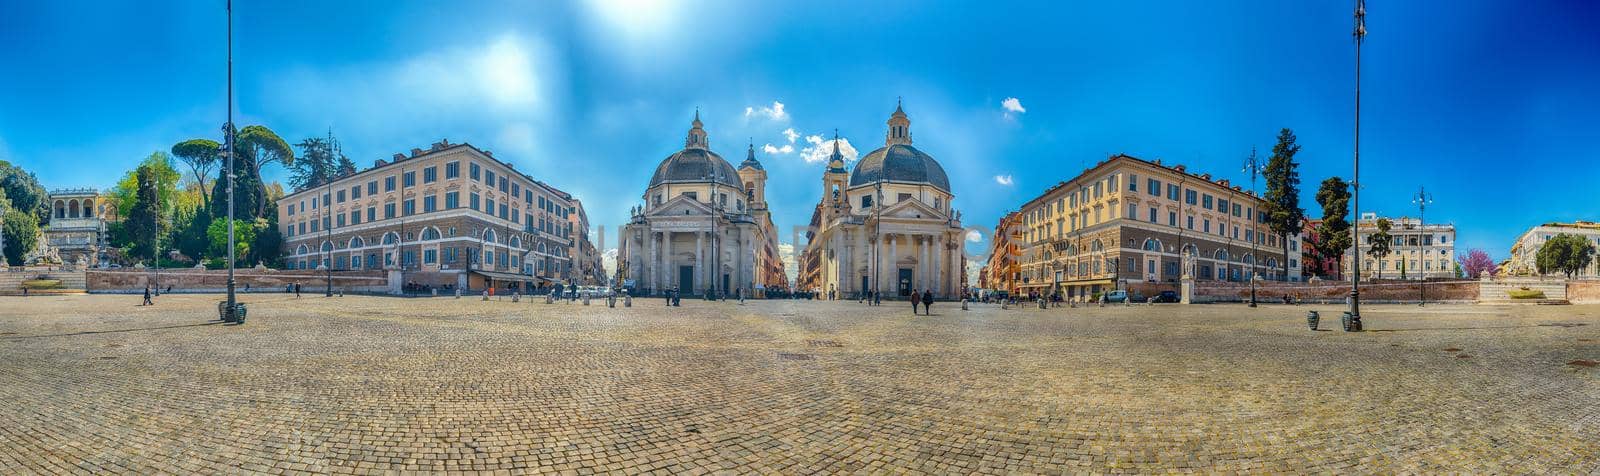 View of the twin churches, Piazza del Popolo, Rome, Italy by marcorubino